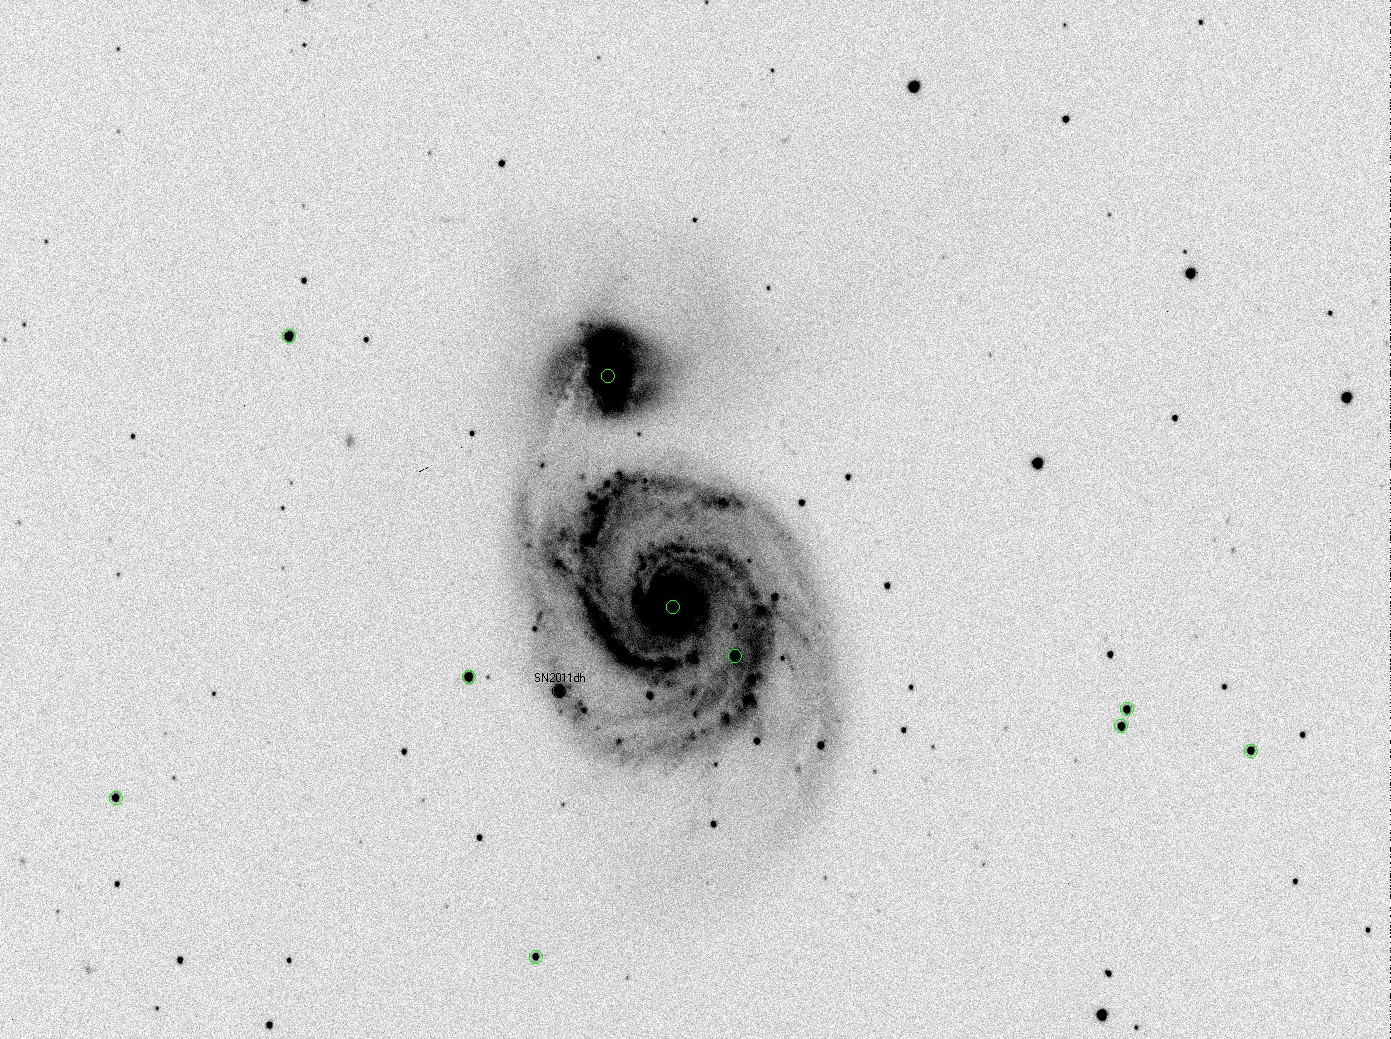 Supernova SN2011dh Messung von Position und Helligkeit